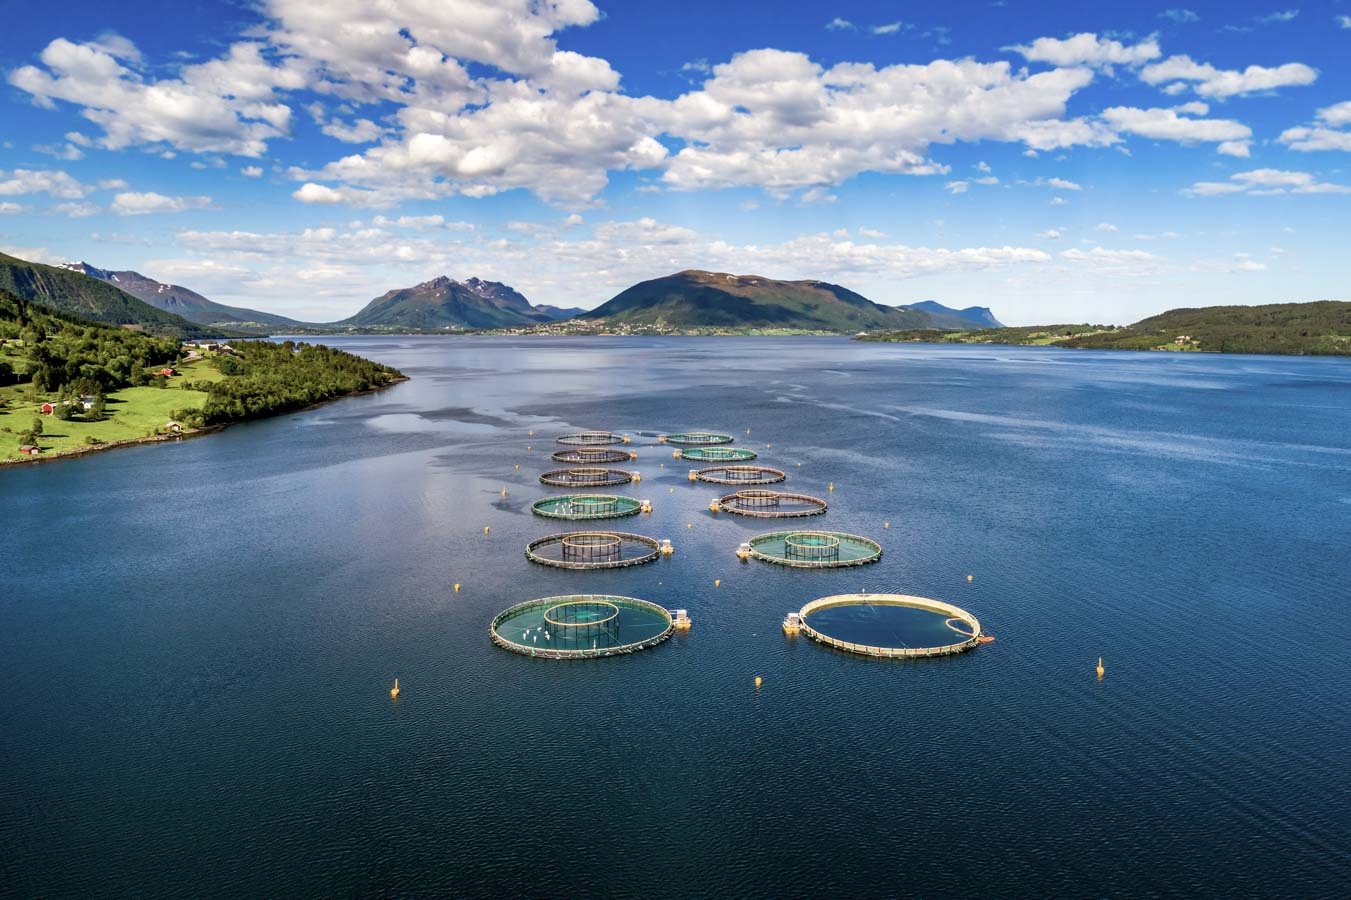 Innovasea realiza monitoreo ambiental en tiempo real en centro de Grieg Seafood